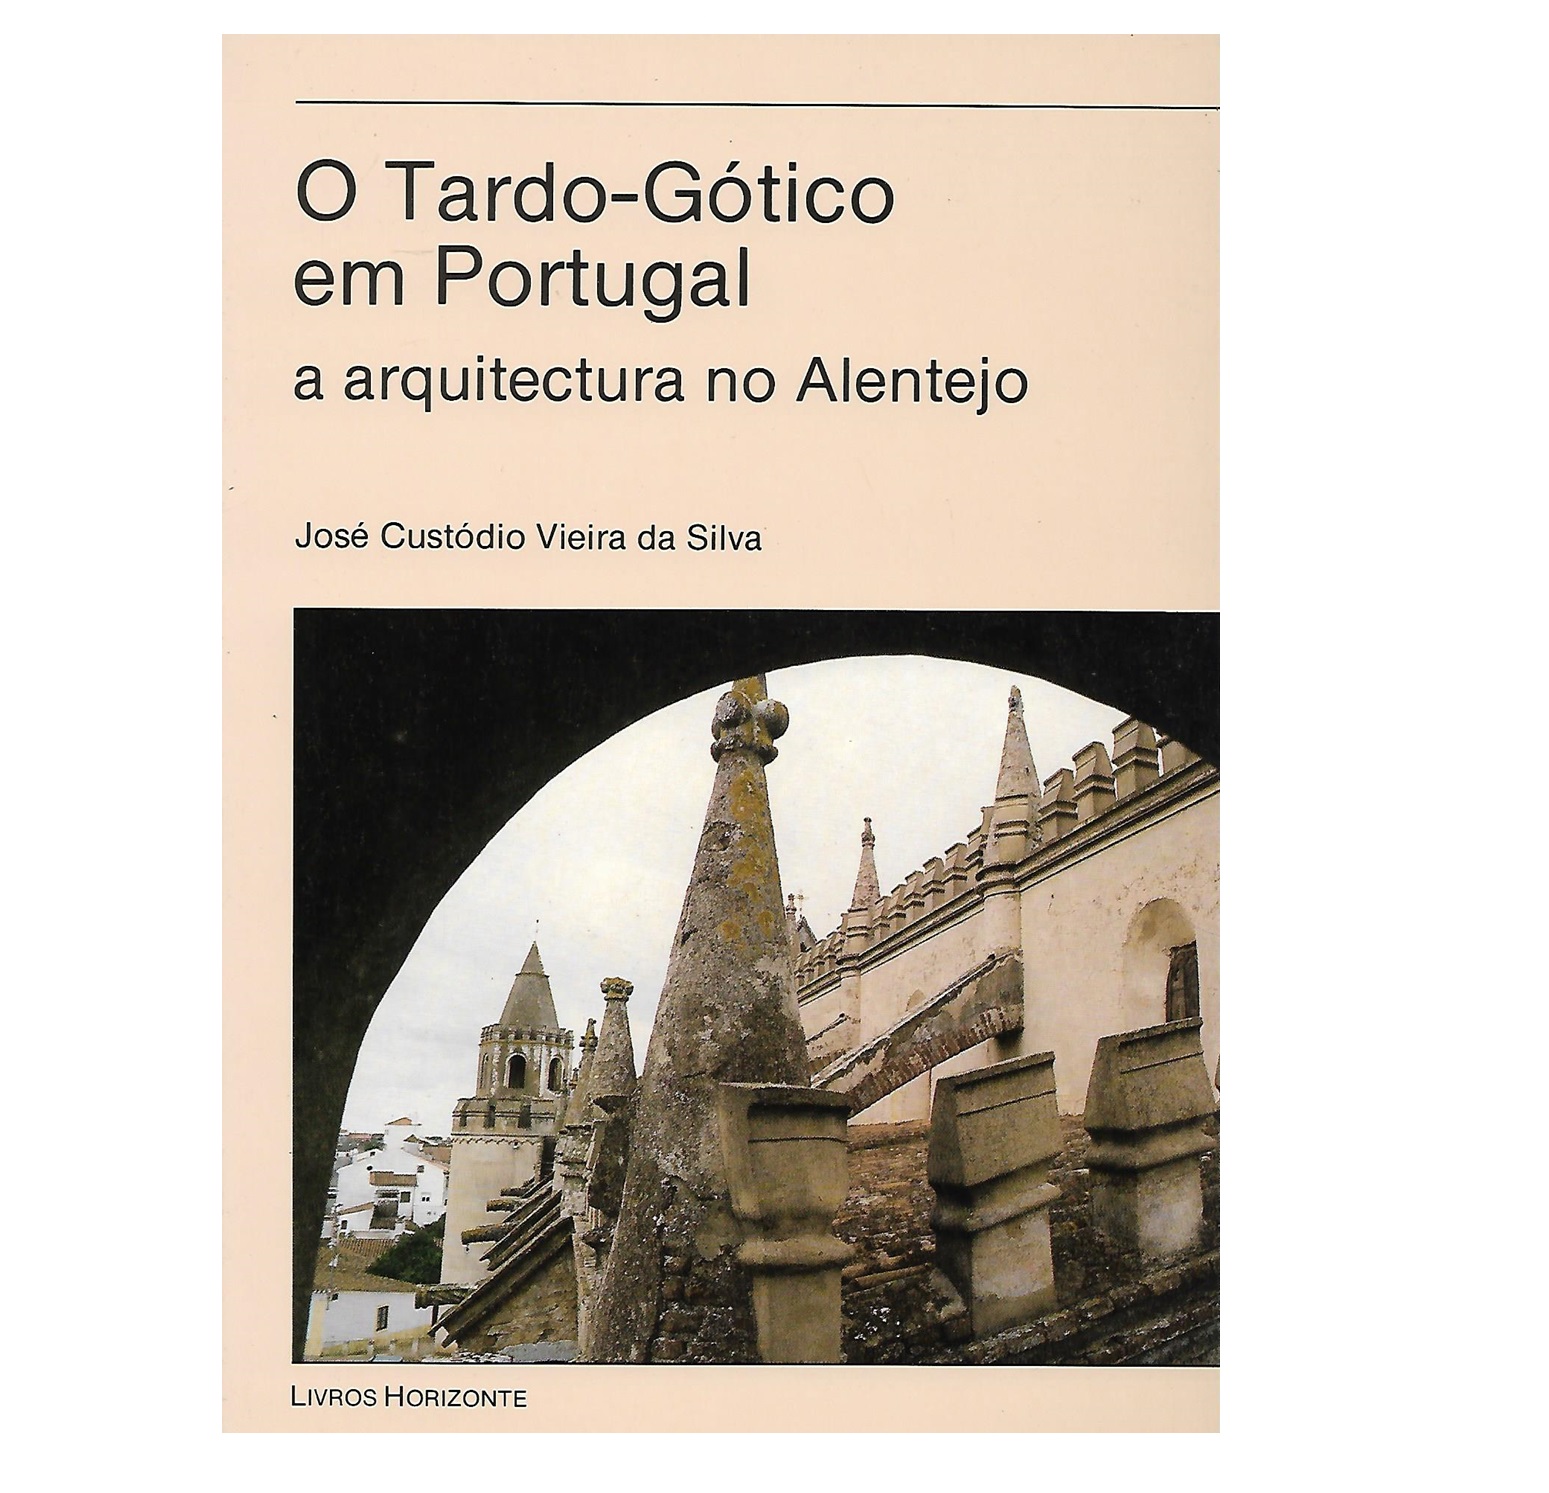 O TARDO-GÓTICO EM PORTUGAL: A ARQUITECTURA NO ALENTEJO